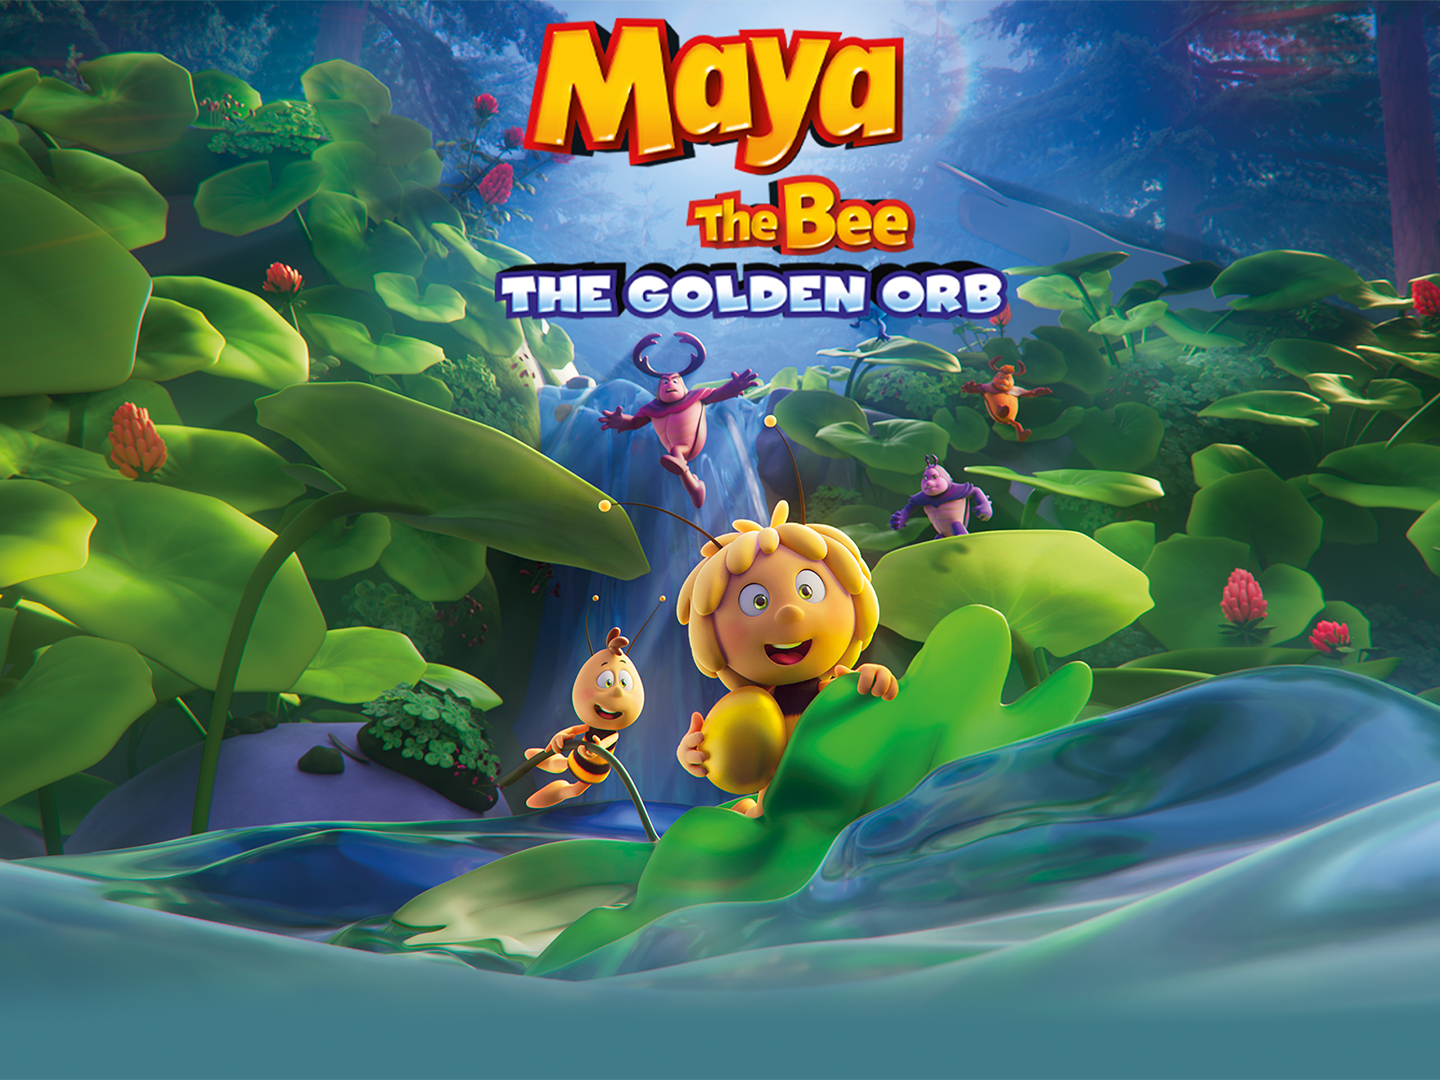 Xem Phim Cuộc Phiêu Lưu Của Ong Maya 3: Giải Cứu Công Chúa Kiến, Maya The Bee 3: The Golden Orb 2021